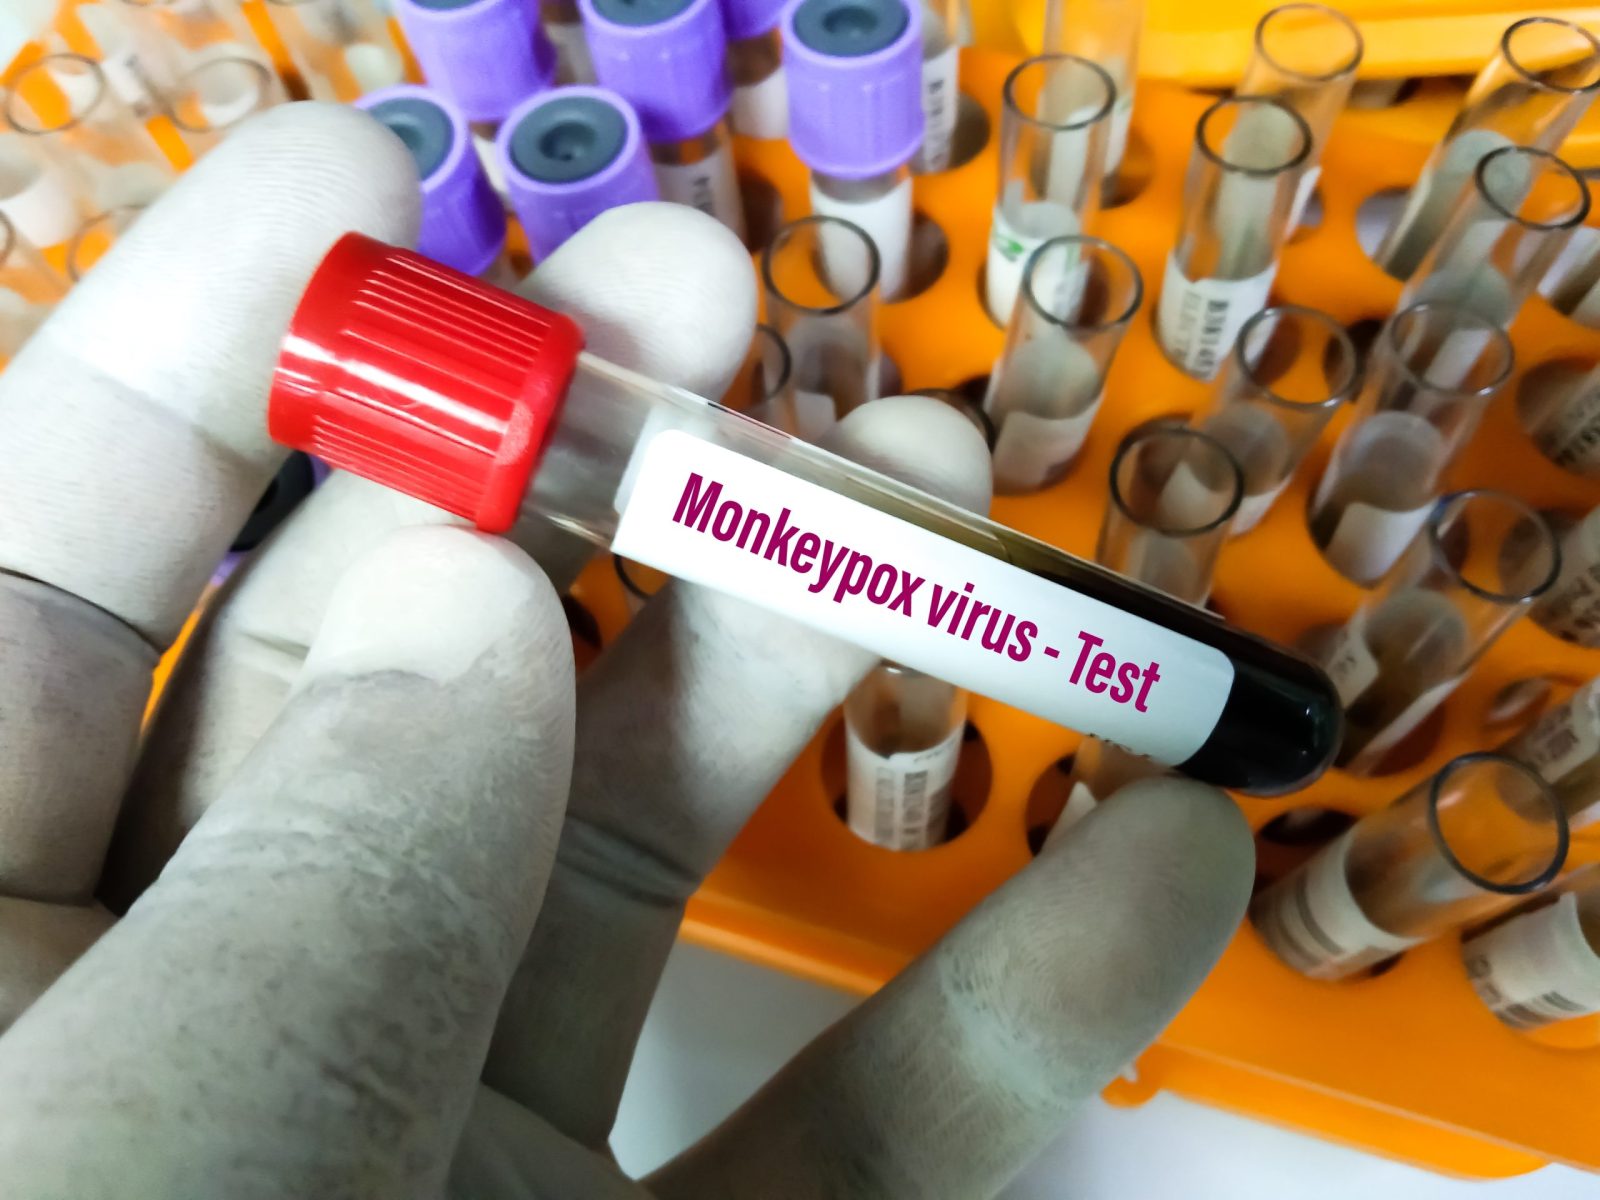 Monkeypox blood sample tube